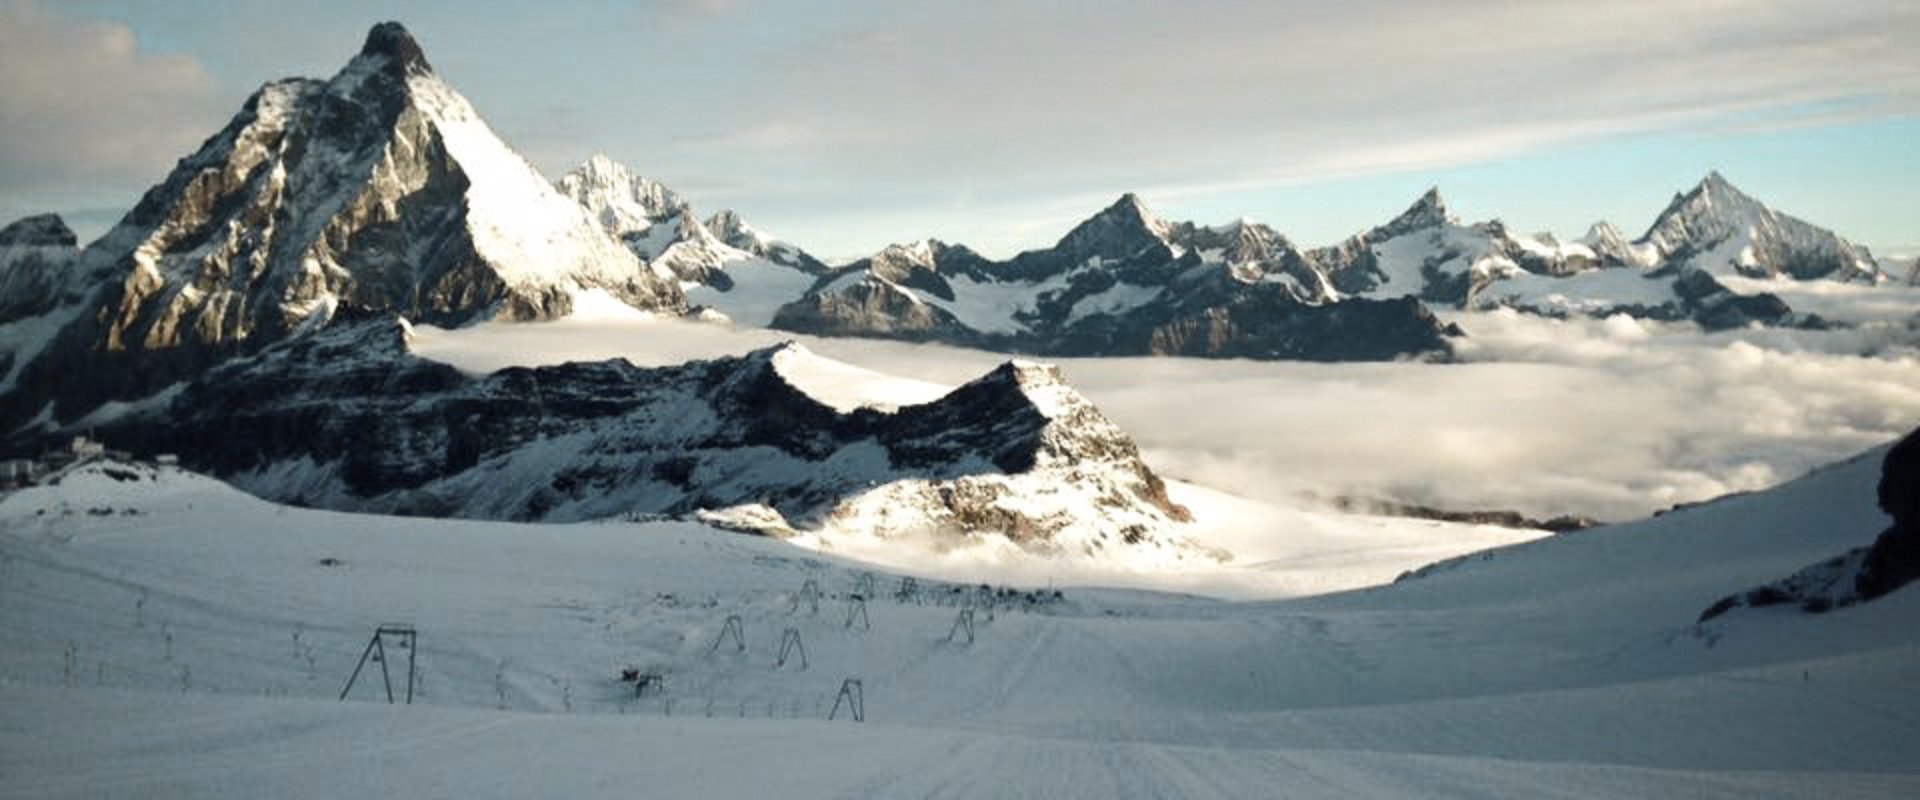 Ausblick auf das Bergpanorama im Glacier Paradise von der Skipiste 